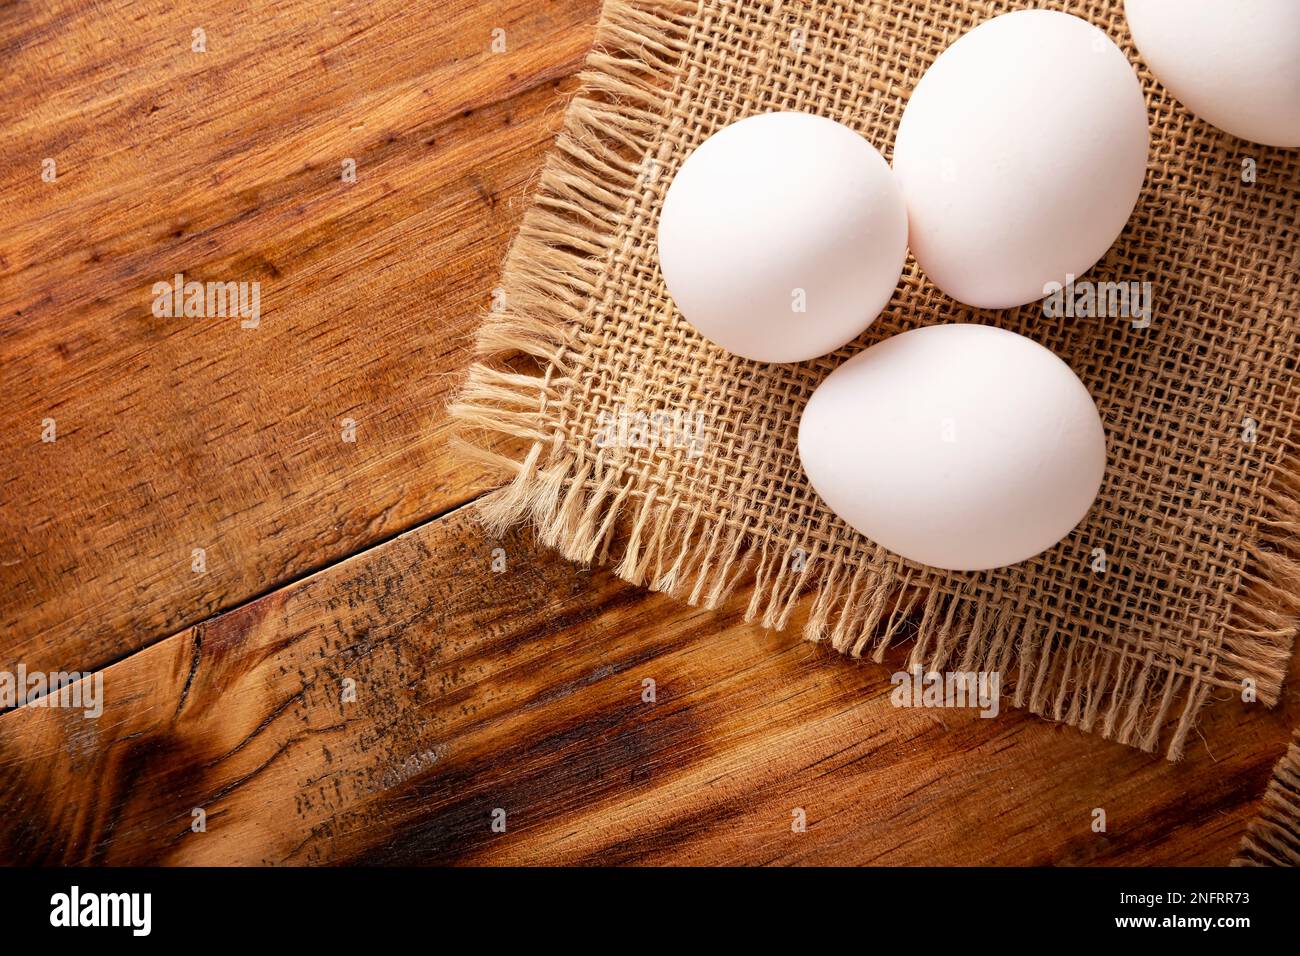 Muchos huevos de pollo blanco en la mesa de madera rústica. Producto alimenticio nutritivo y económico muy popular. Vista superior de tabla con espacio de copia Foto de stock